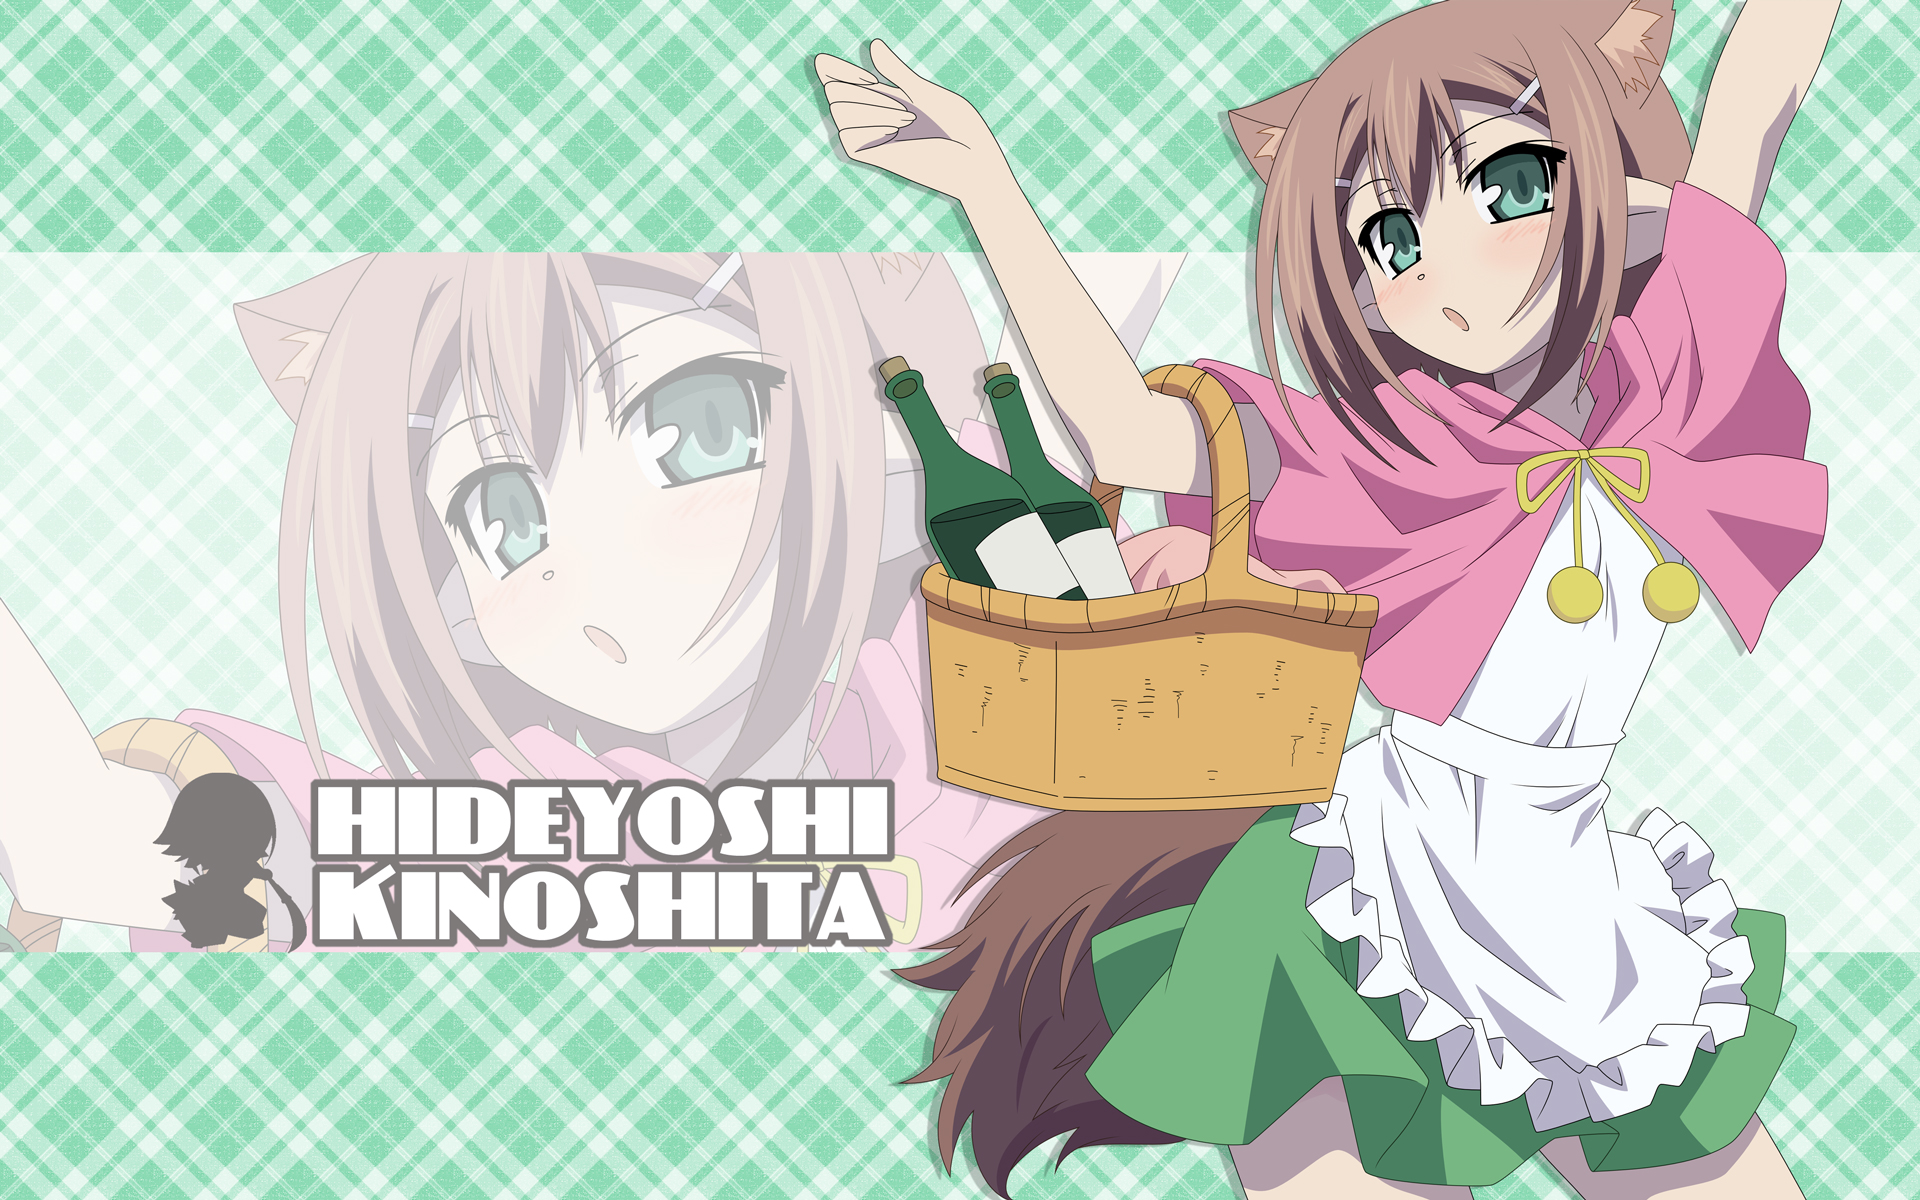 trap, animal ears, Baka to Test to Shoukanjuu, anime boys, Kinoshita Hideyoshi - desktop wallpaper